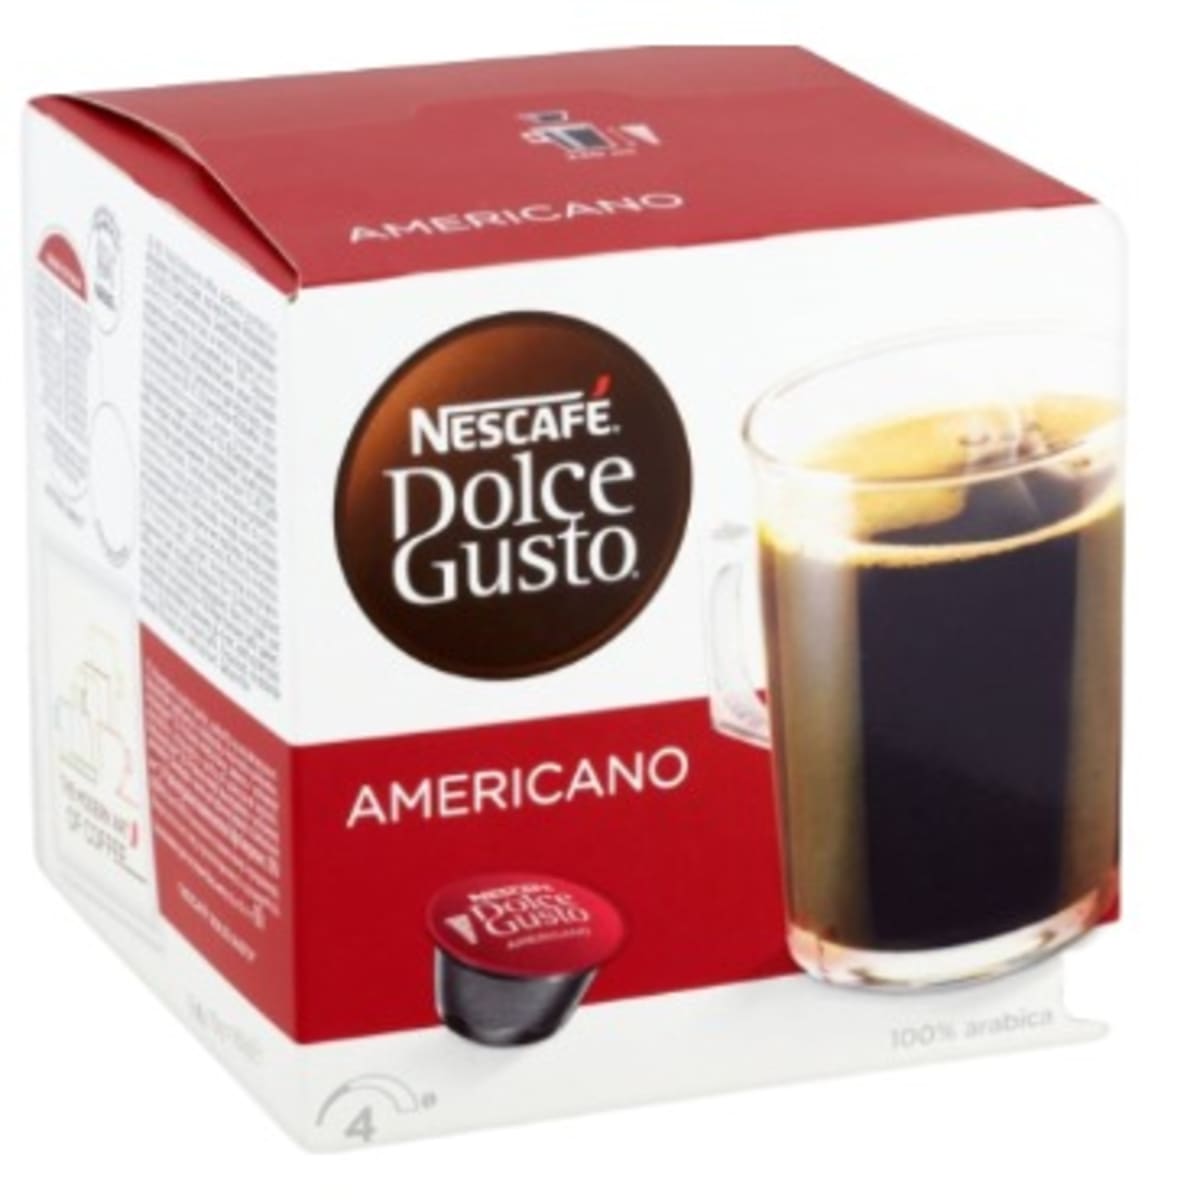 Nescafé Dolce Gusto Lungo Café Tostado Molido En Cápsulas Coffee Capsules  100% Arabic, 7 g / 0.2 oz each (box of 16)